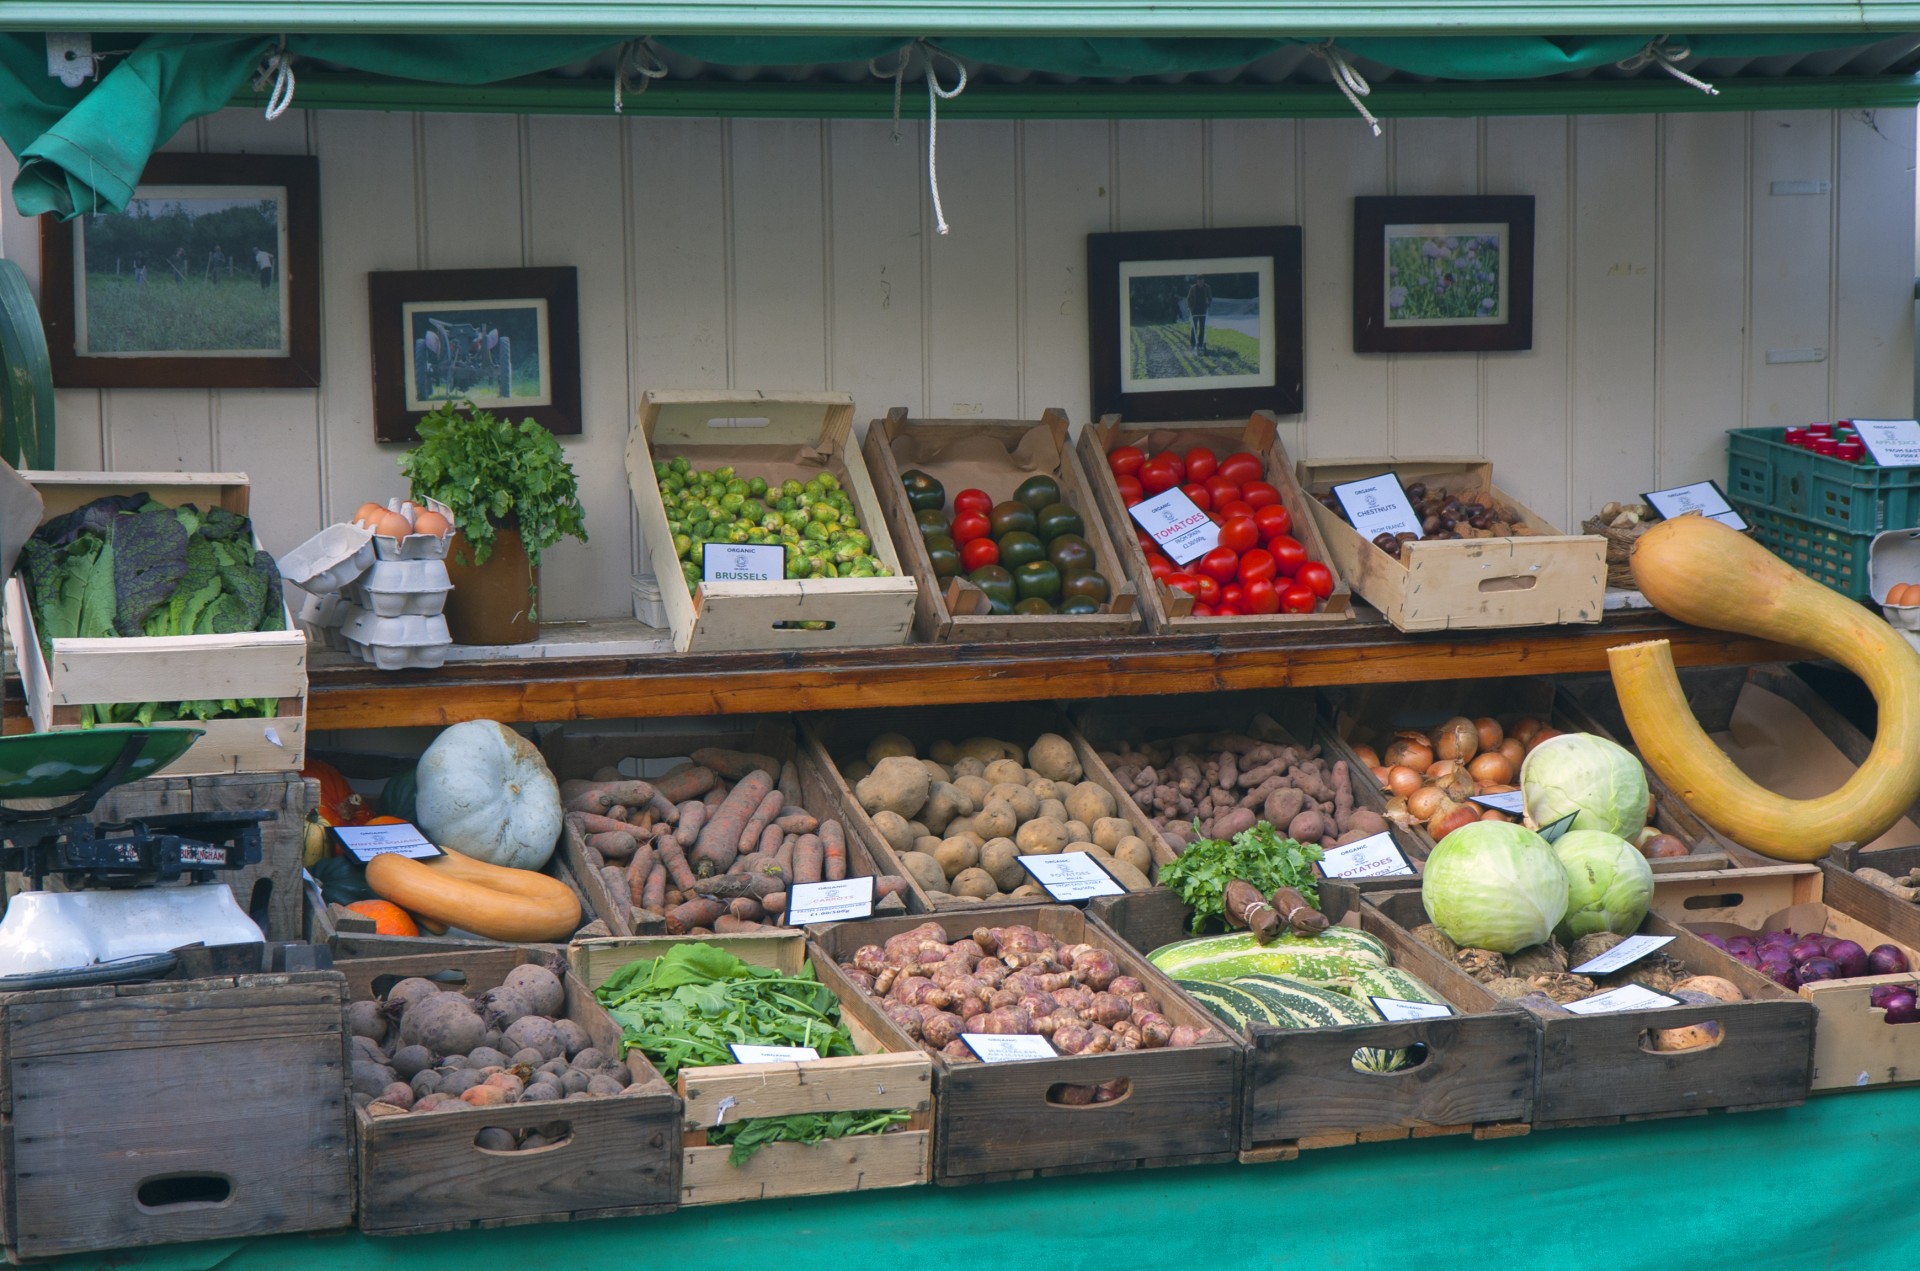 Рынок витрины. Овощи на рынке. Витрина с овощами на рынке. Прилавок с овощами и фруктами. Выкладка овощей и фруктов в ларьке.